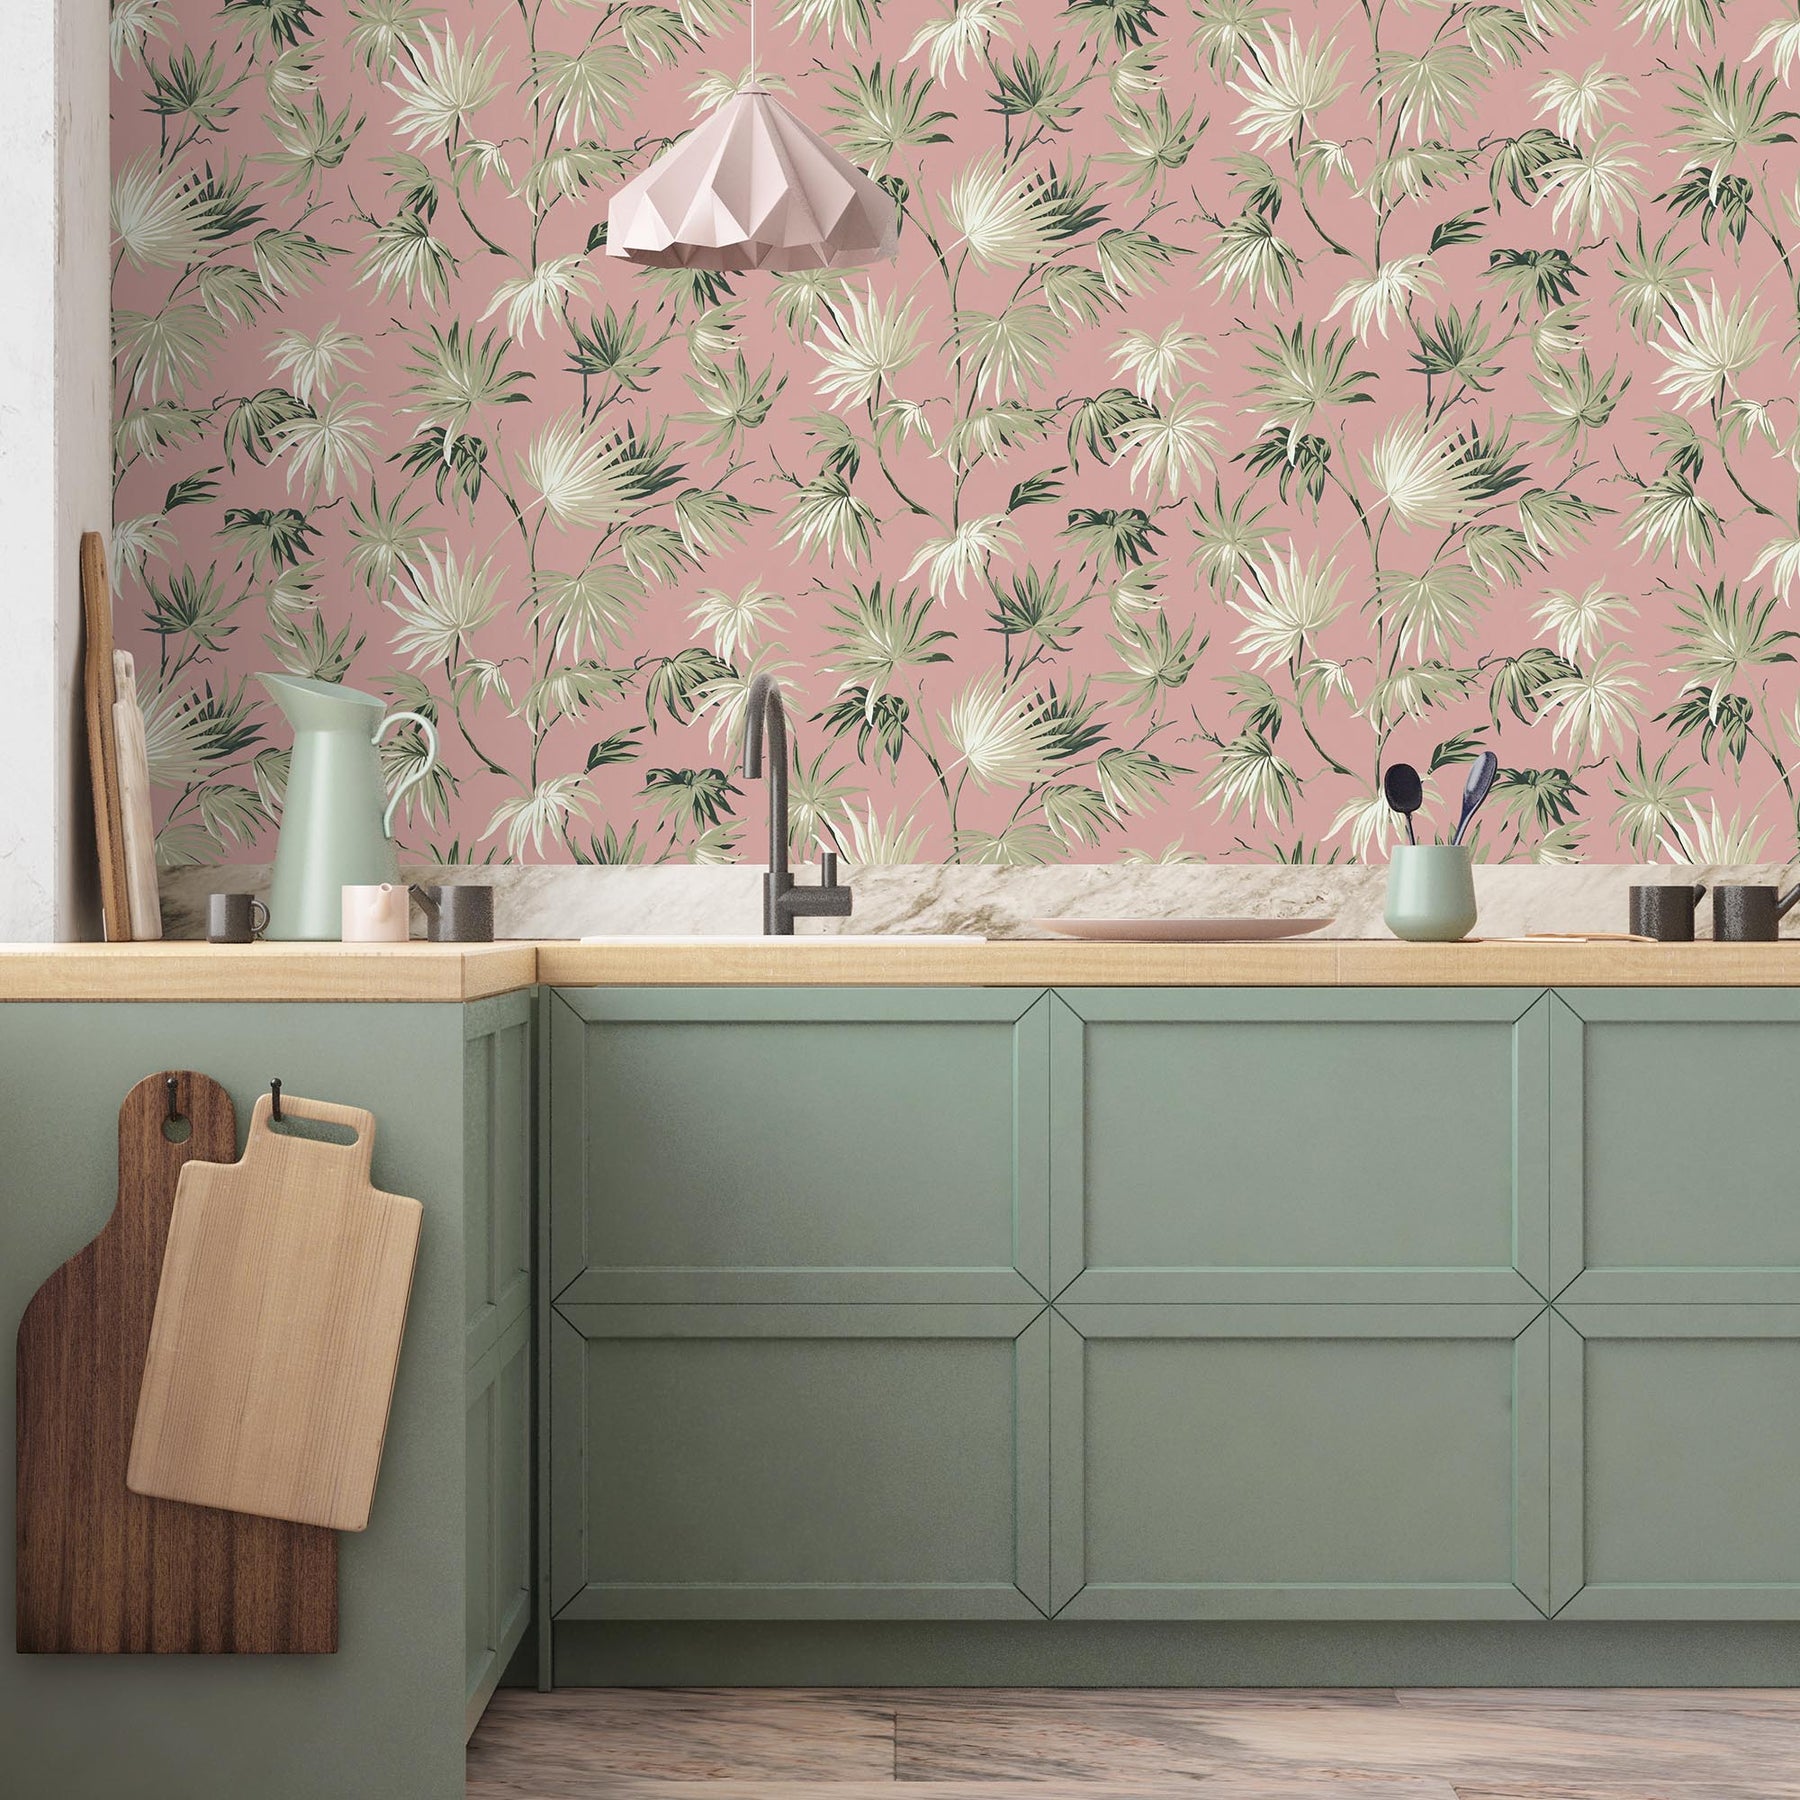 Tấm nền giấy dán tường màu hồng pastel với họa tiết lá xanh rất phù hợp cho phòng khách và phòng ngủ của bạn. Hãy xem hình ảnh để tận hưởng sự tươi mới và giản đơn của nó.